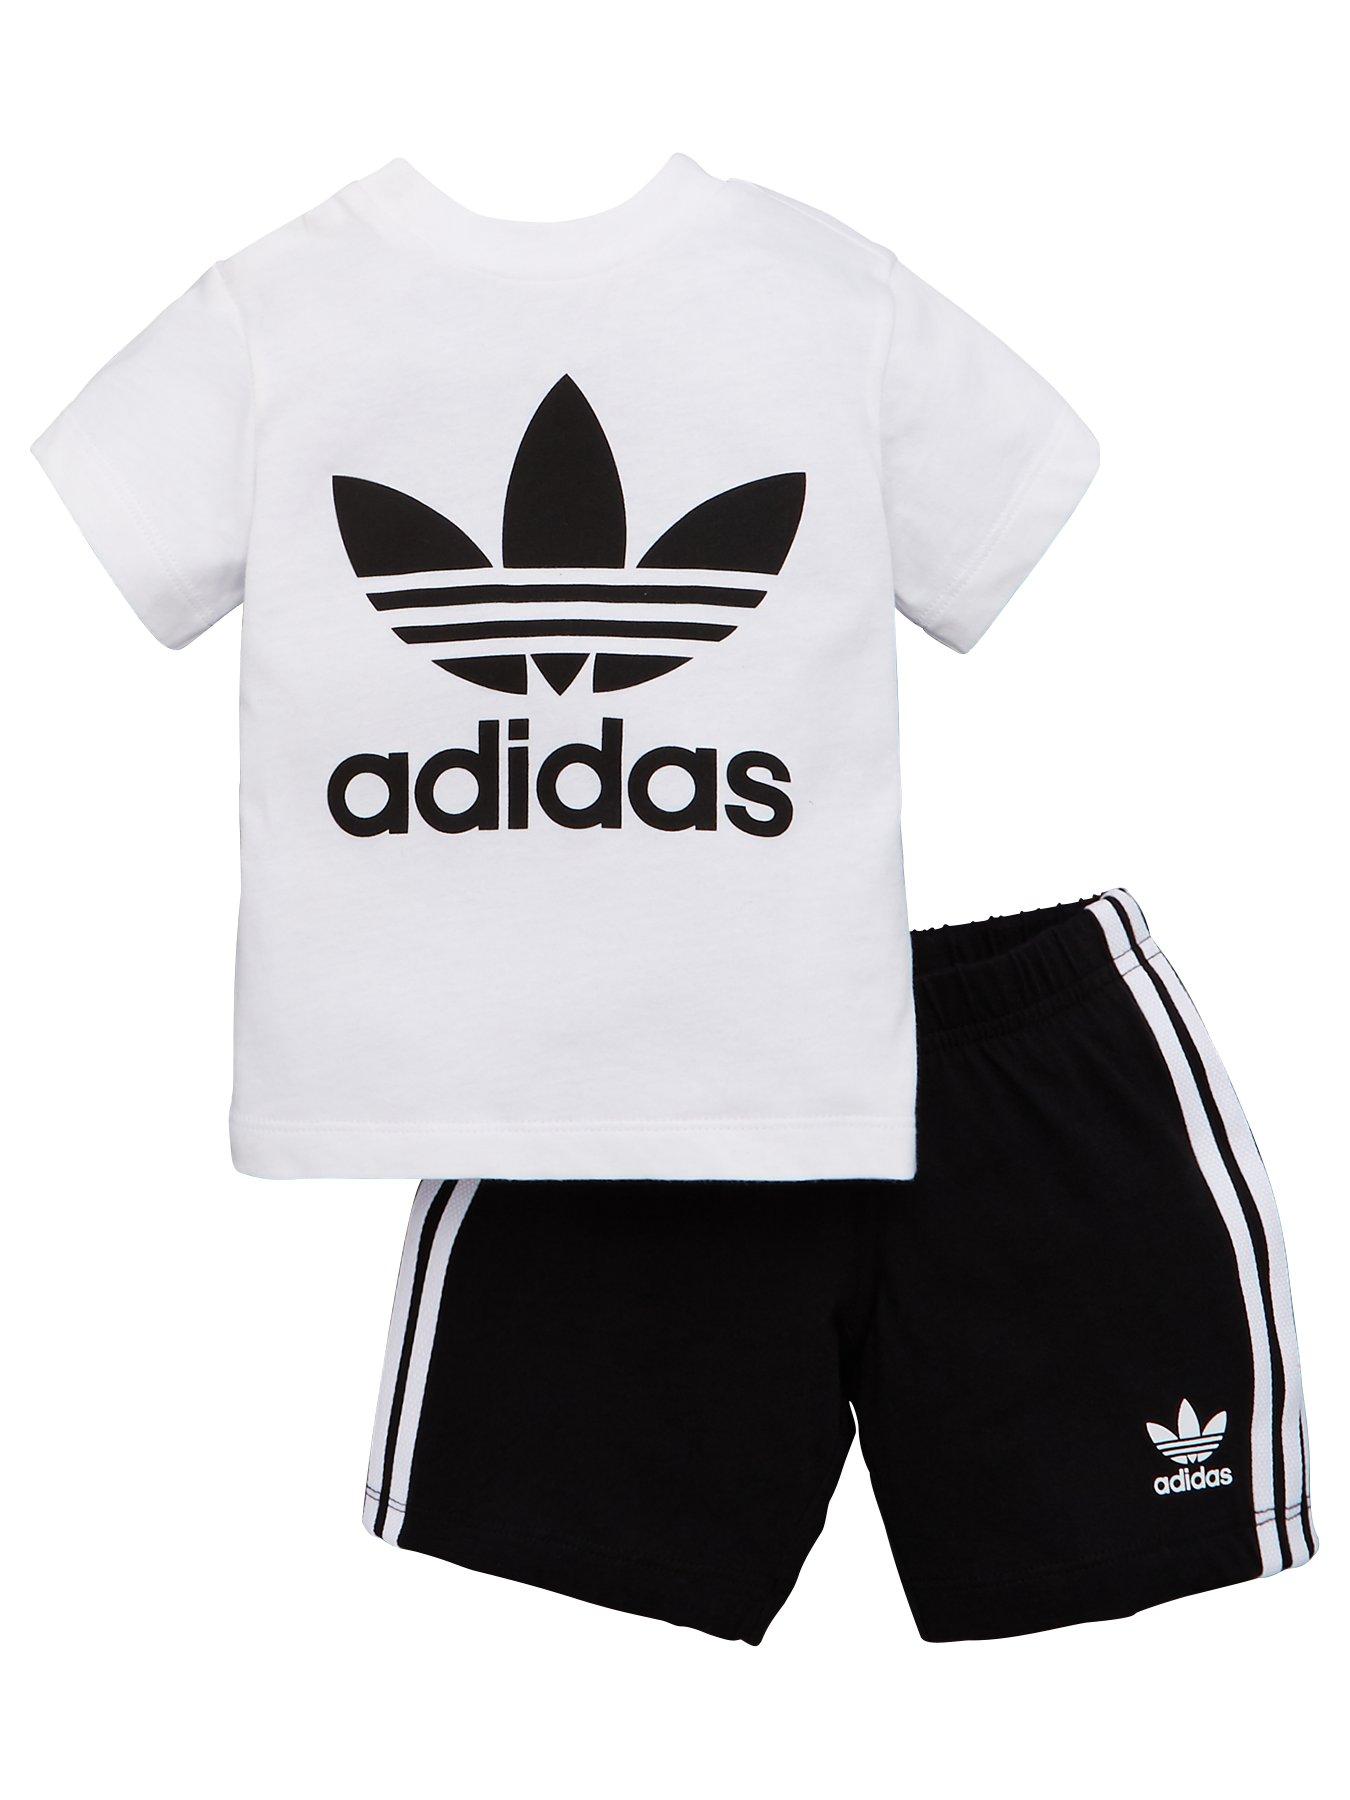 adidas shorts and top set